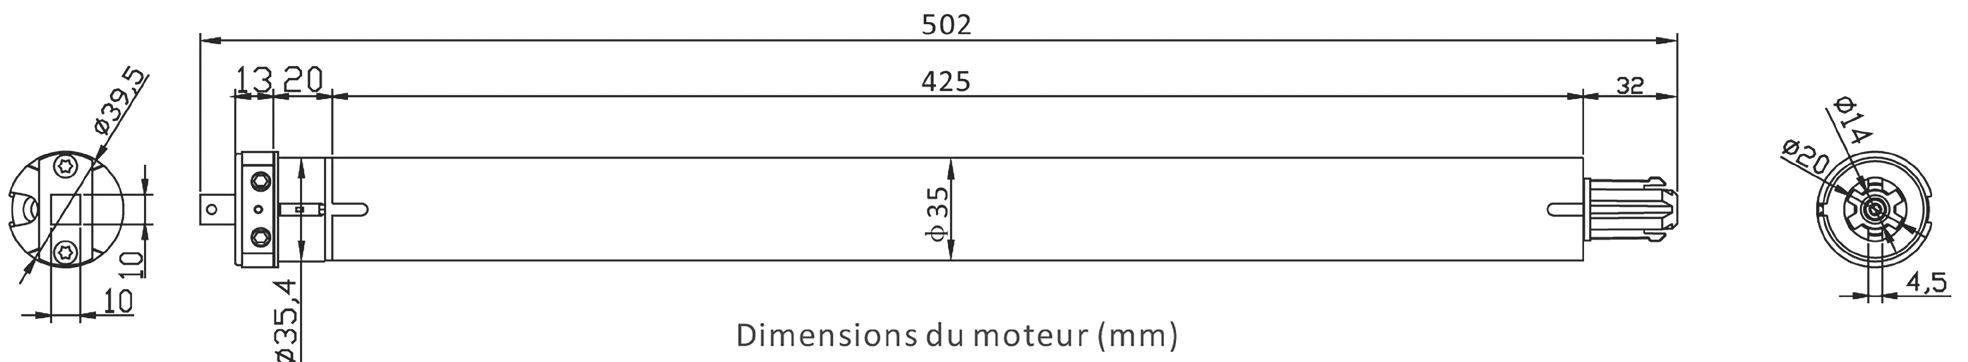 Dimensions moteur solaire AM45